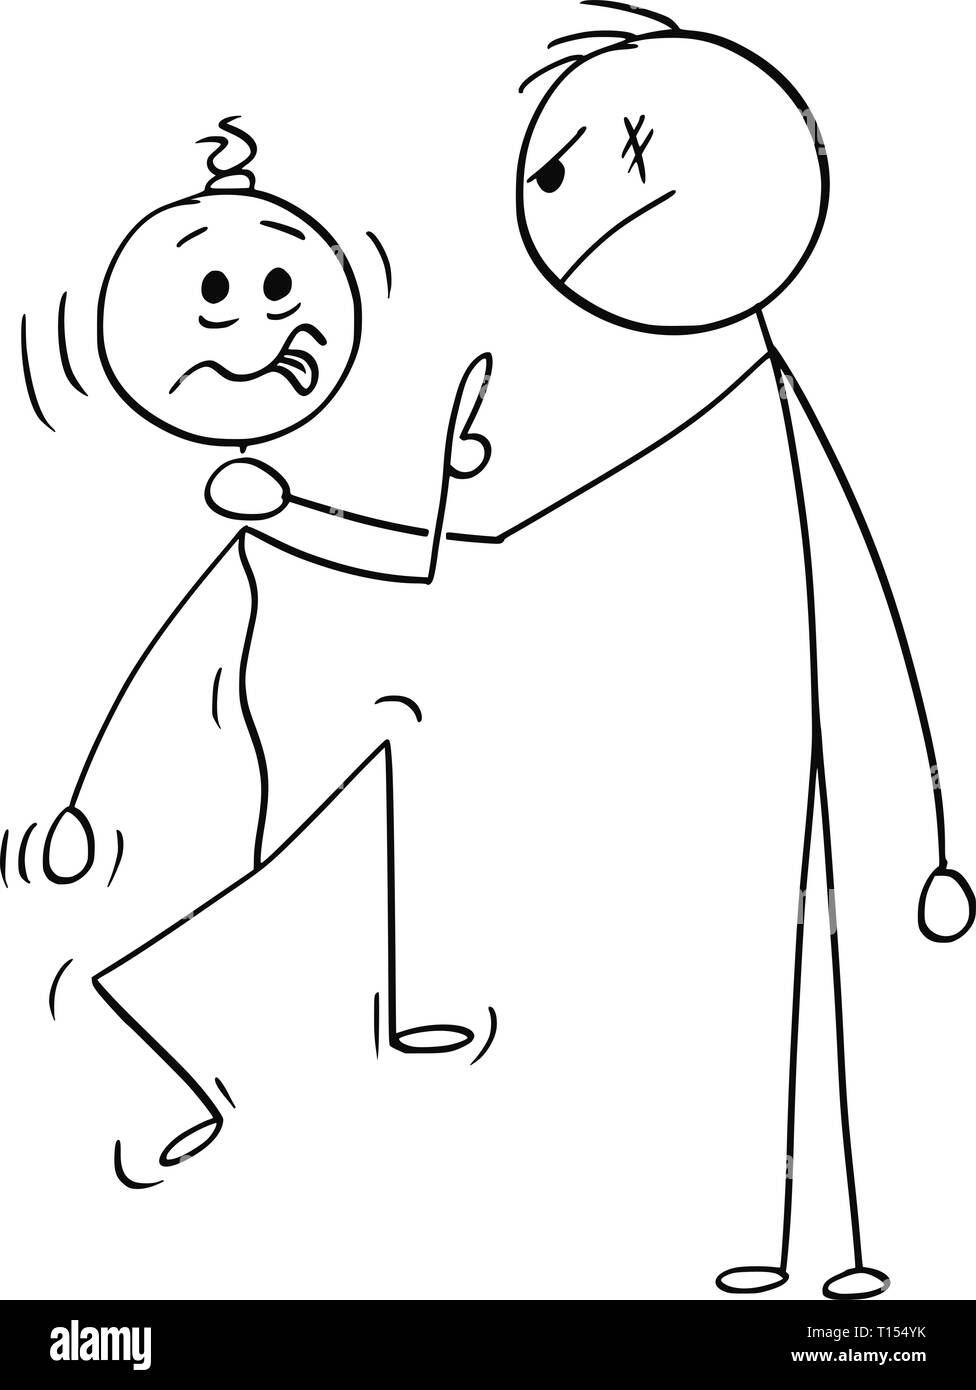 Cartoon Strichmännchen Zeichnen konzeptionelle Darstellung der großen und starken Mann, Hals kleineren und schwächeren des Menschen und würgen ihn und er ihn in der Luft. Stock Vektor